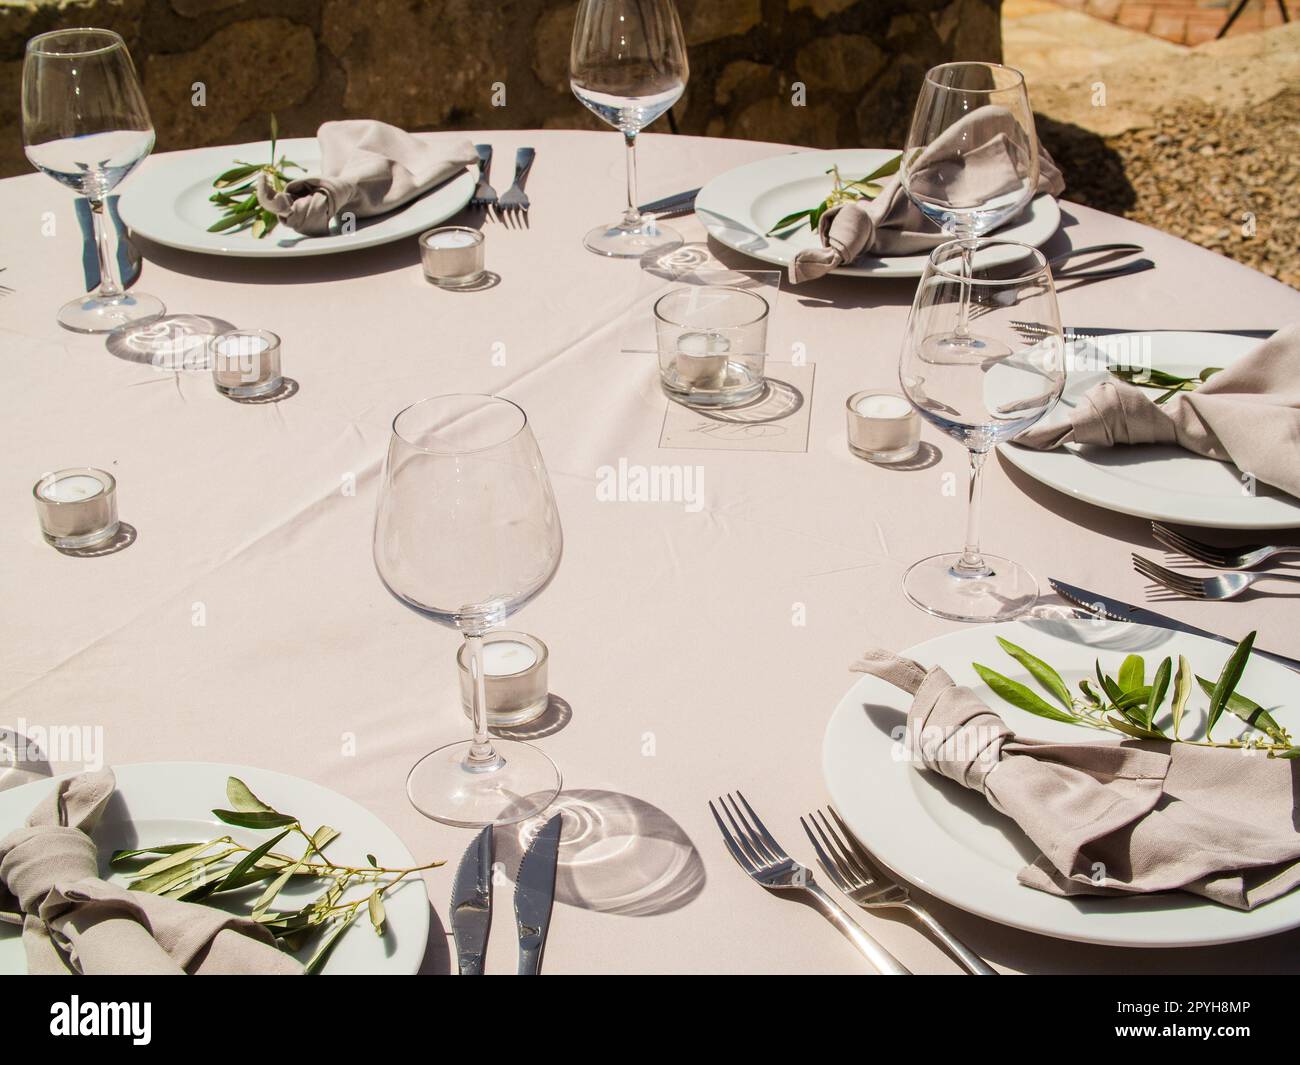 Table de réception de mariage élégante de luxe et table centrale florale - banquet de mariage et événement extérieur Banque D'Images